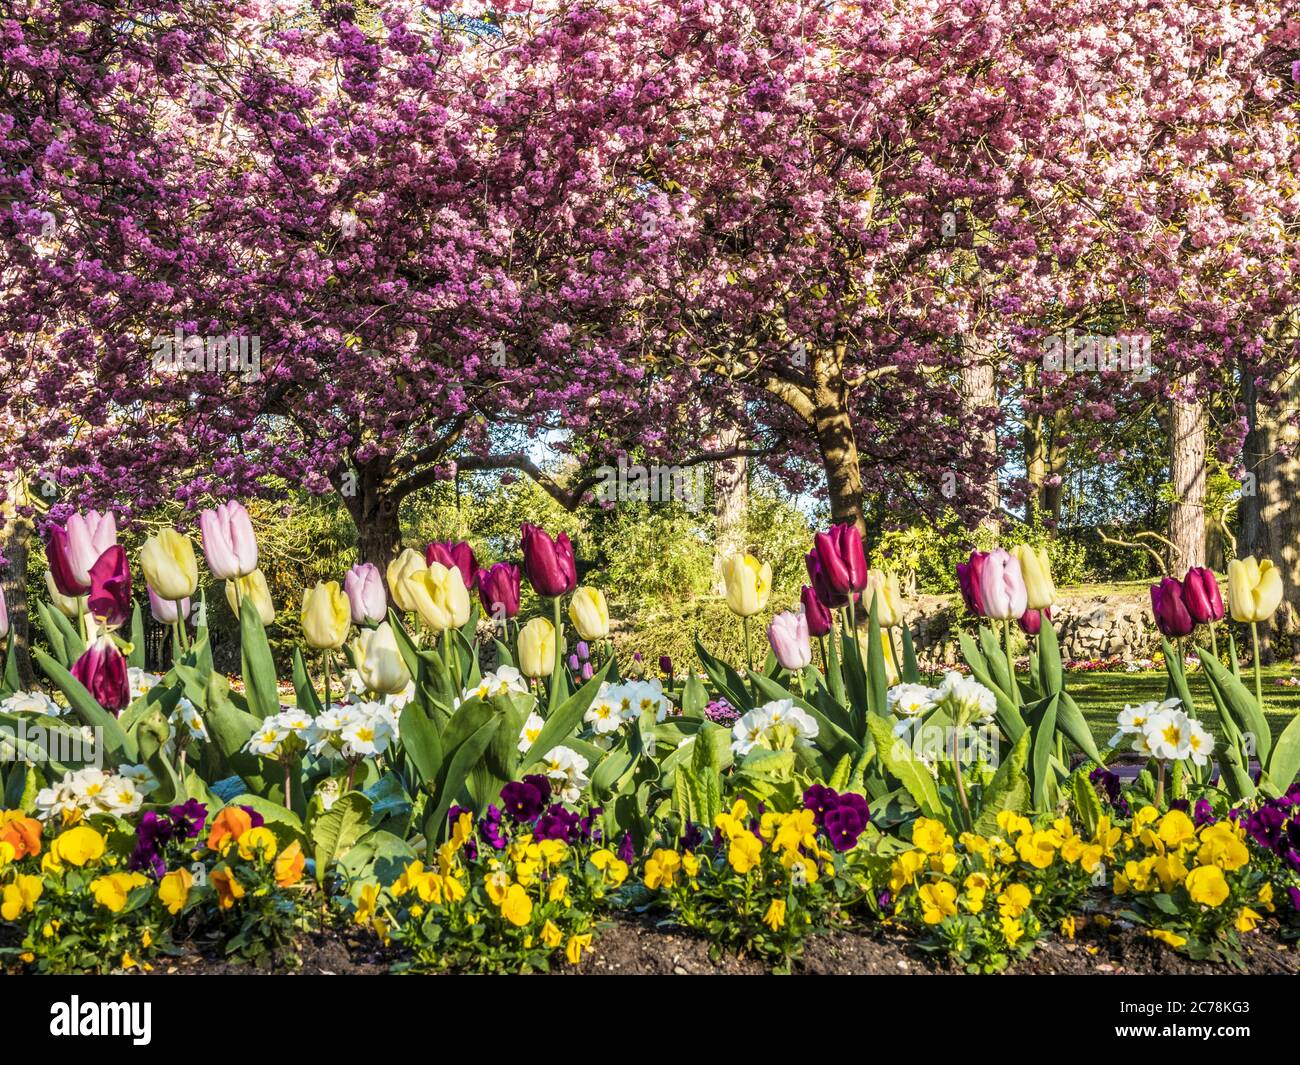 Un letto di tulipani, primule bianche e pansies con alberi di ciliegio rosa fioriti in fiore sullo sfondo in un parco pubblico urbano in Inghilterra. Foto Stock